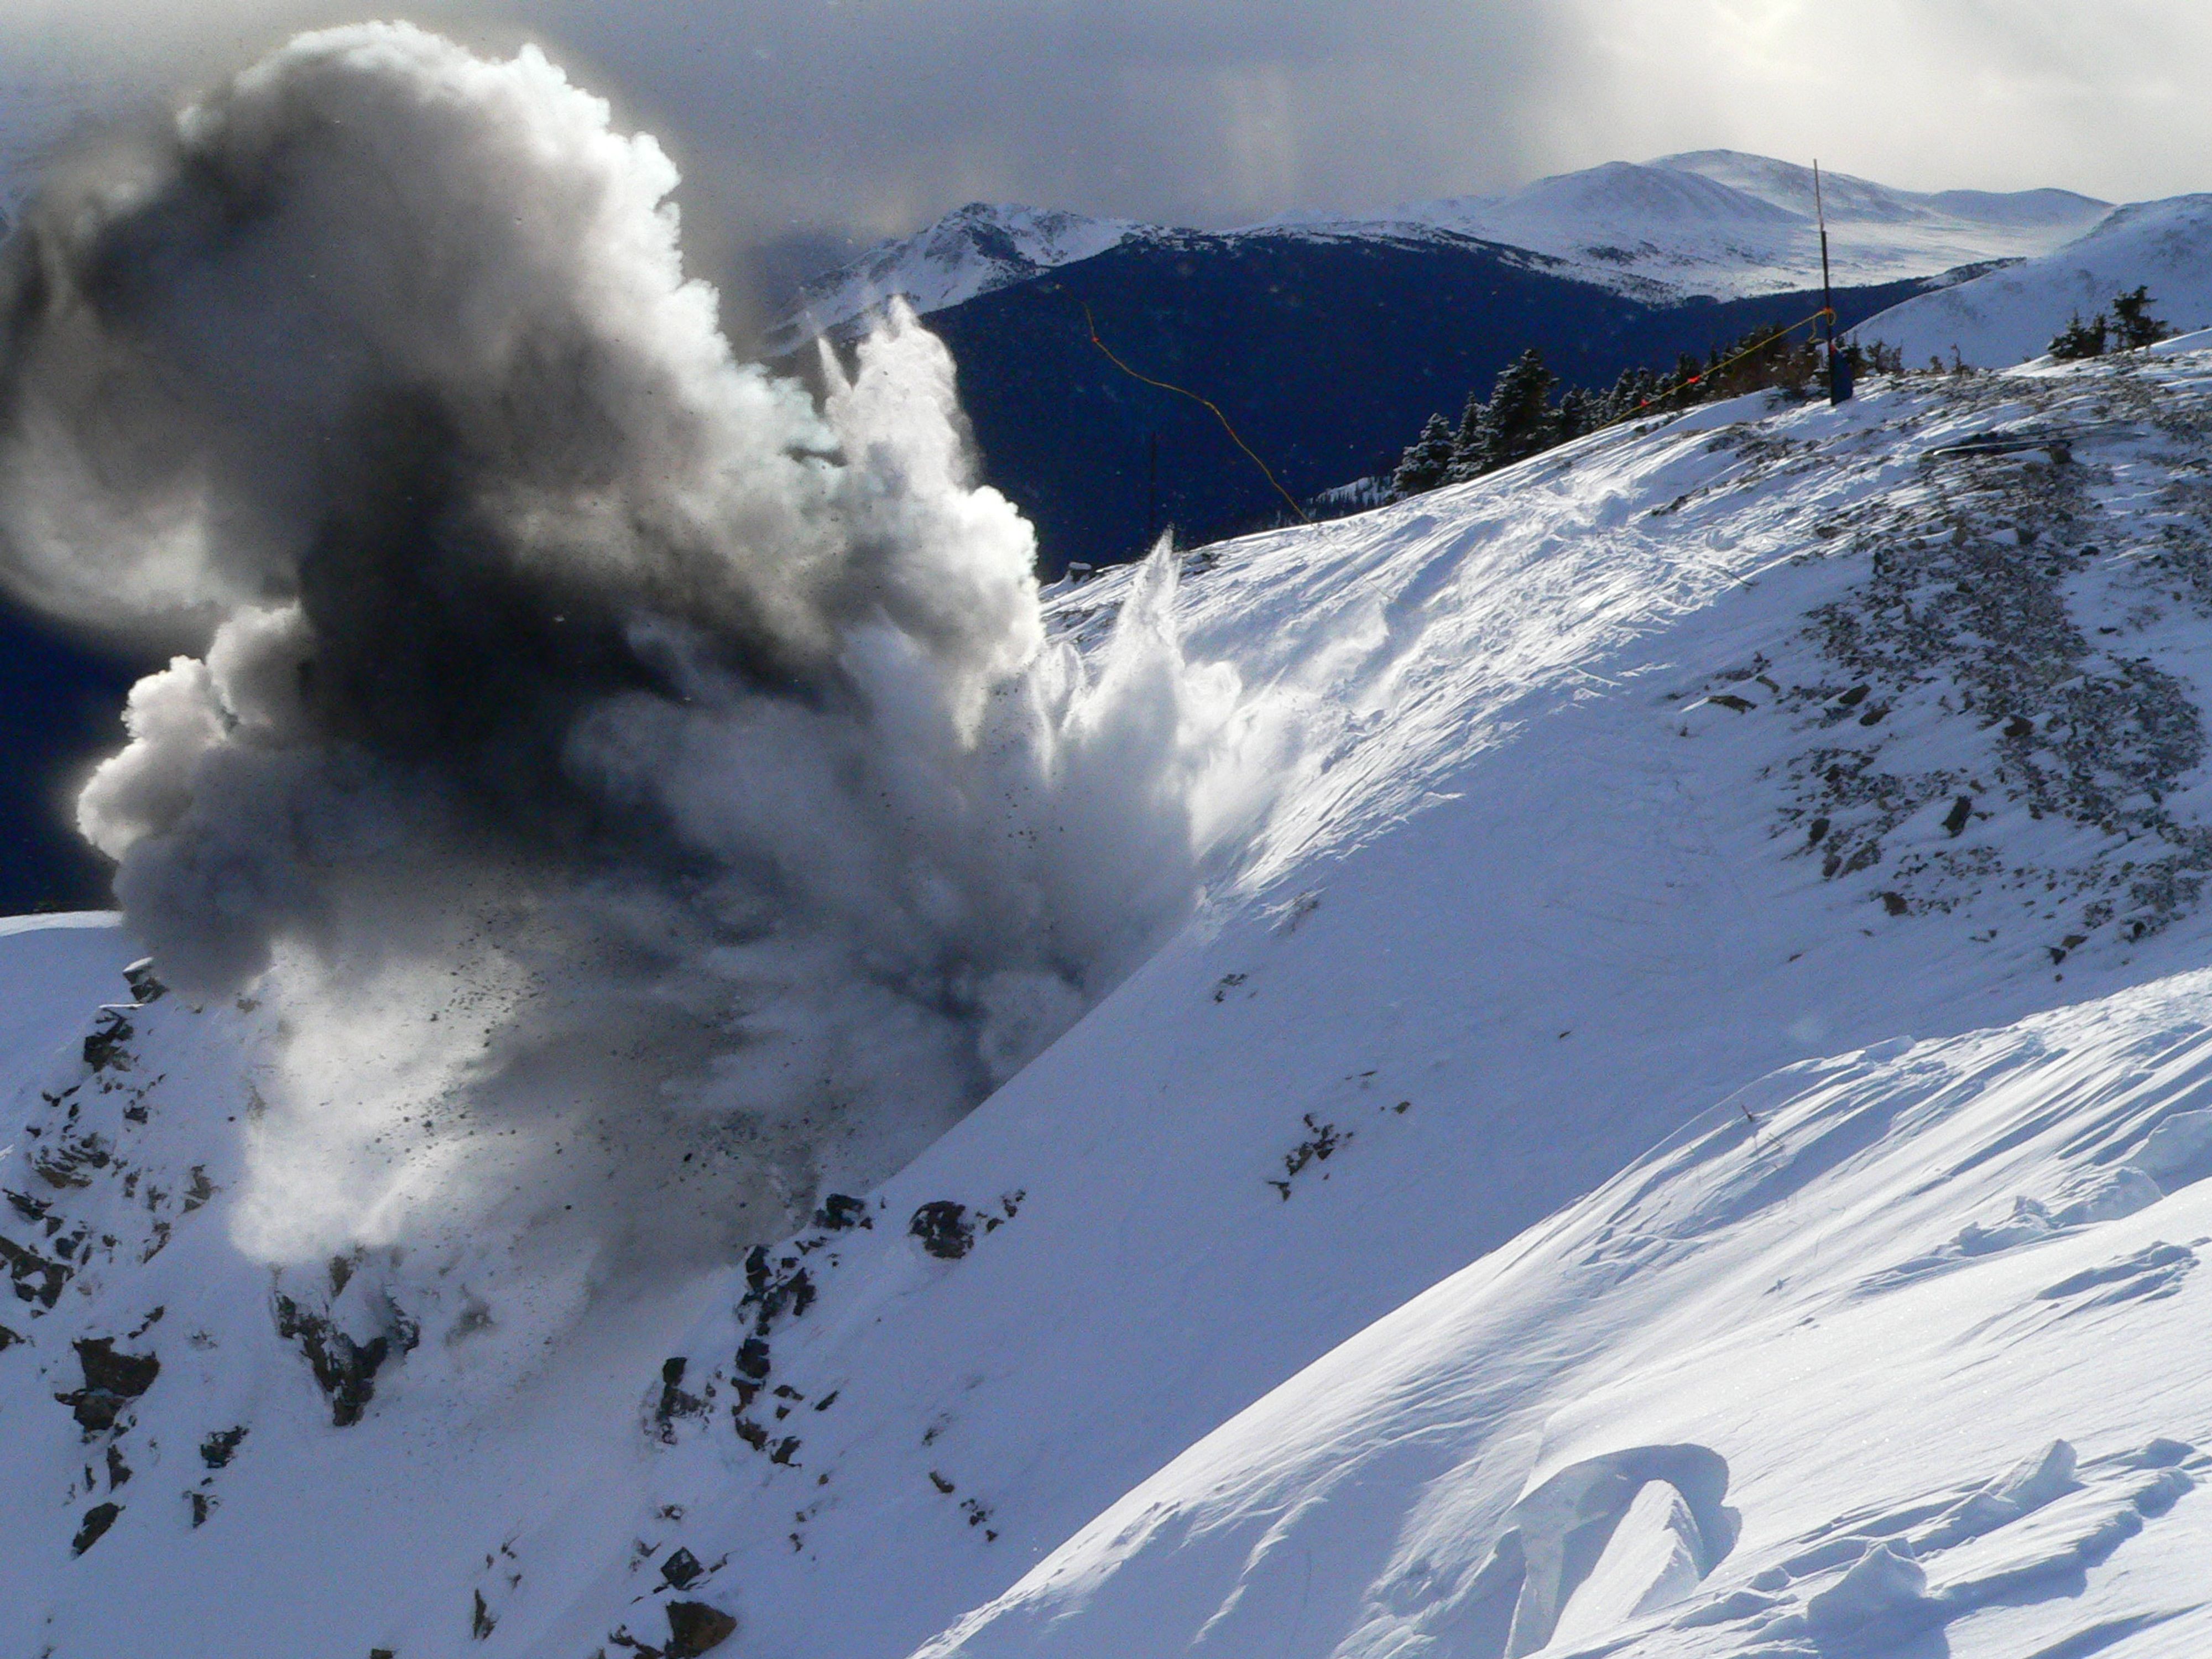 Des explosifs sont utilisés pour déclencher des avalanches lorsque personne ne se trouve dans les environs afin d’éviter des avalanches importantes au moment où des gens pourraient s’y trouver.